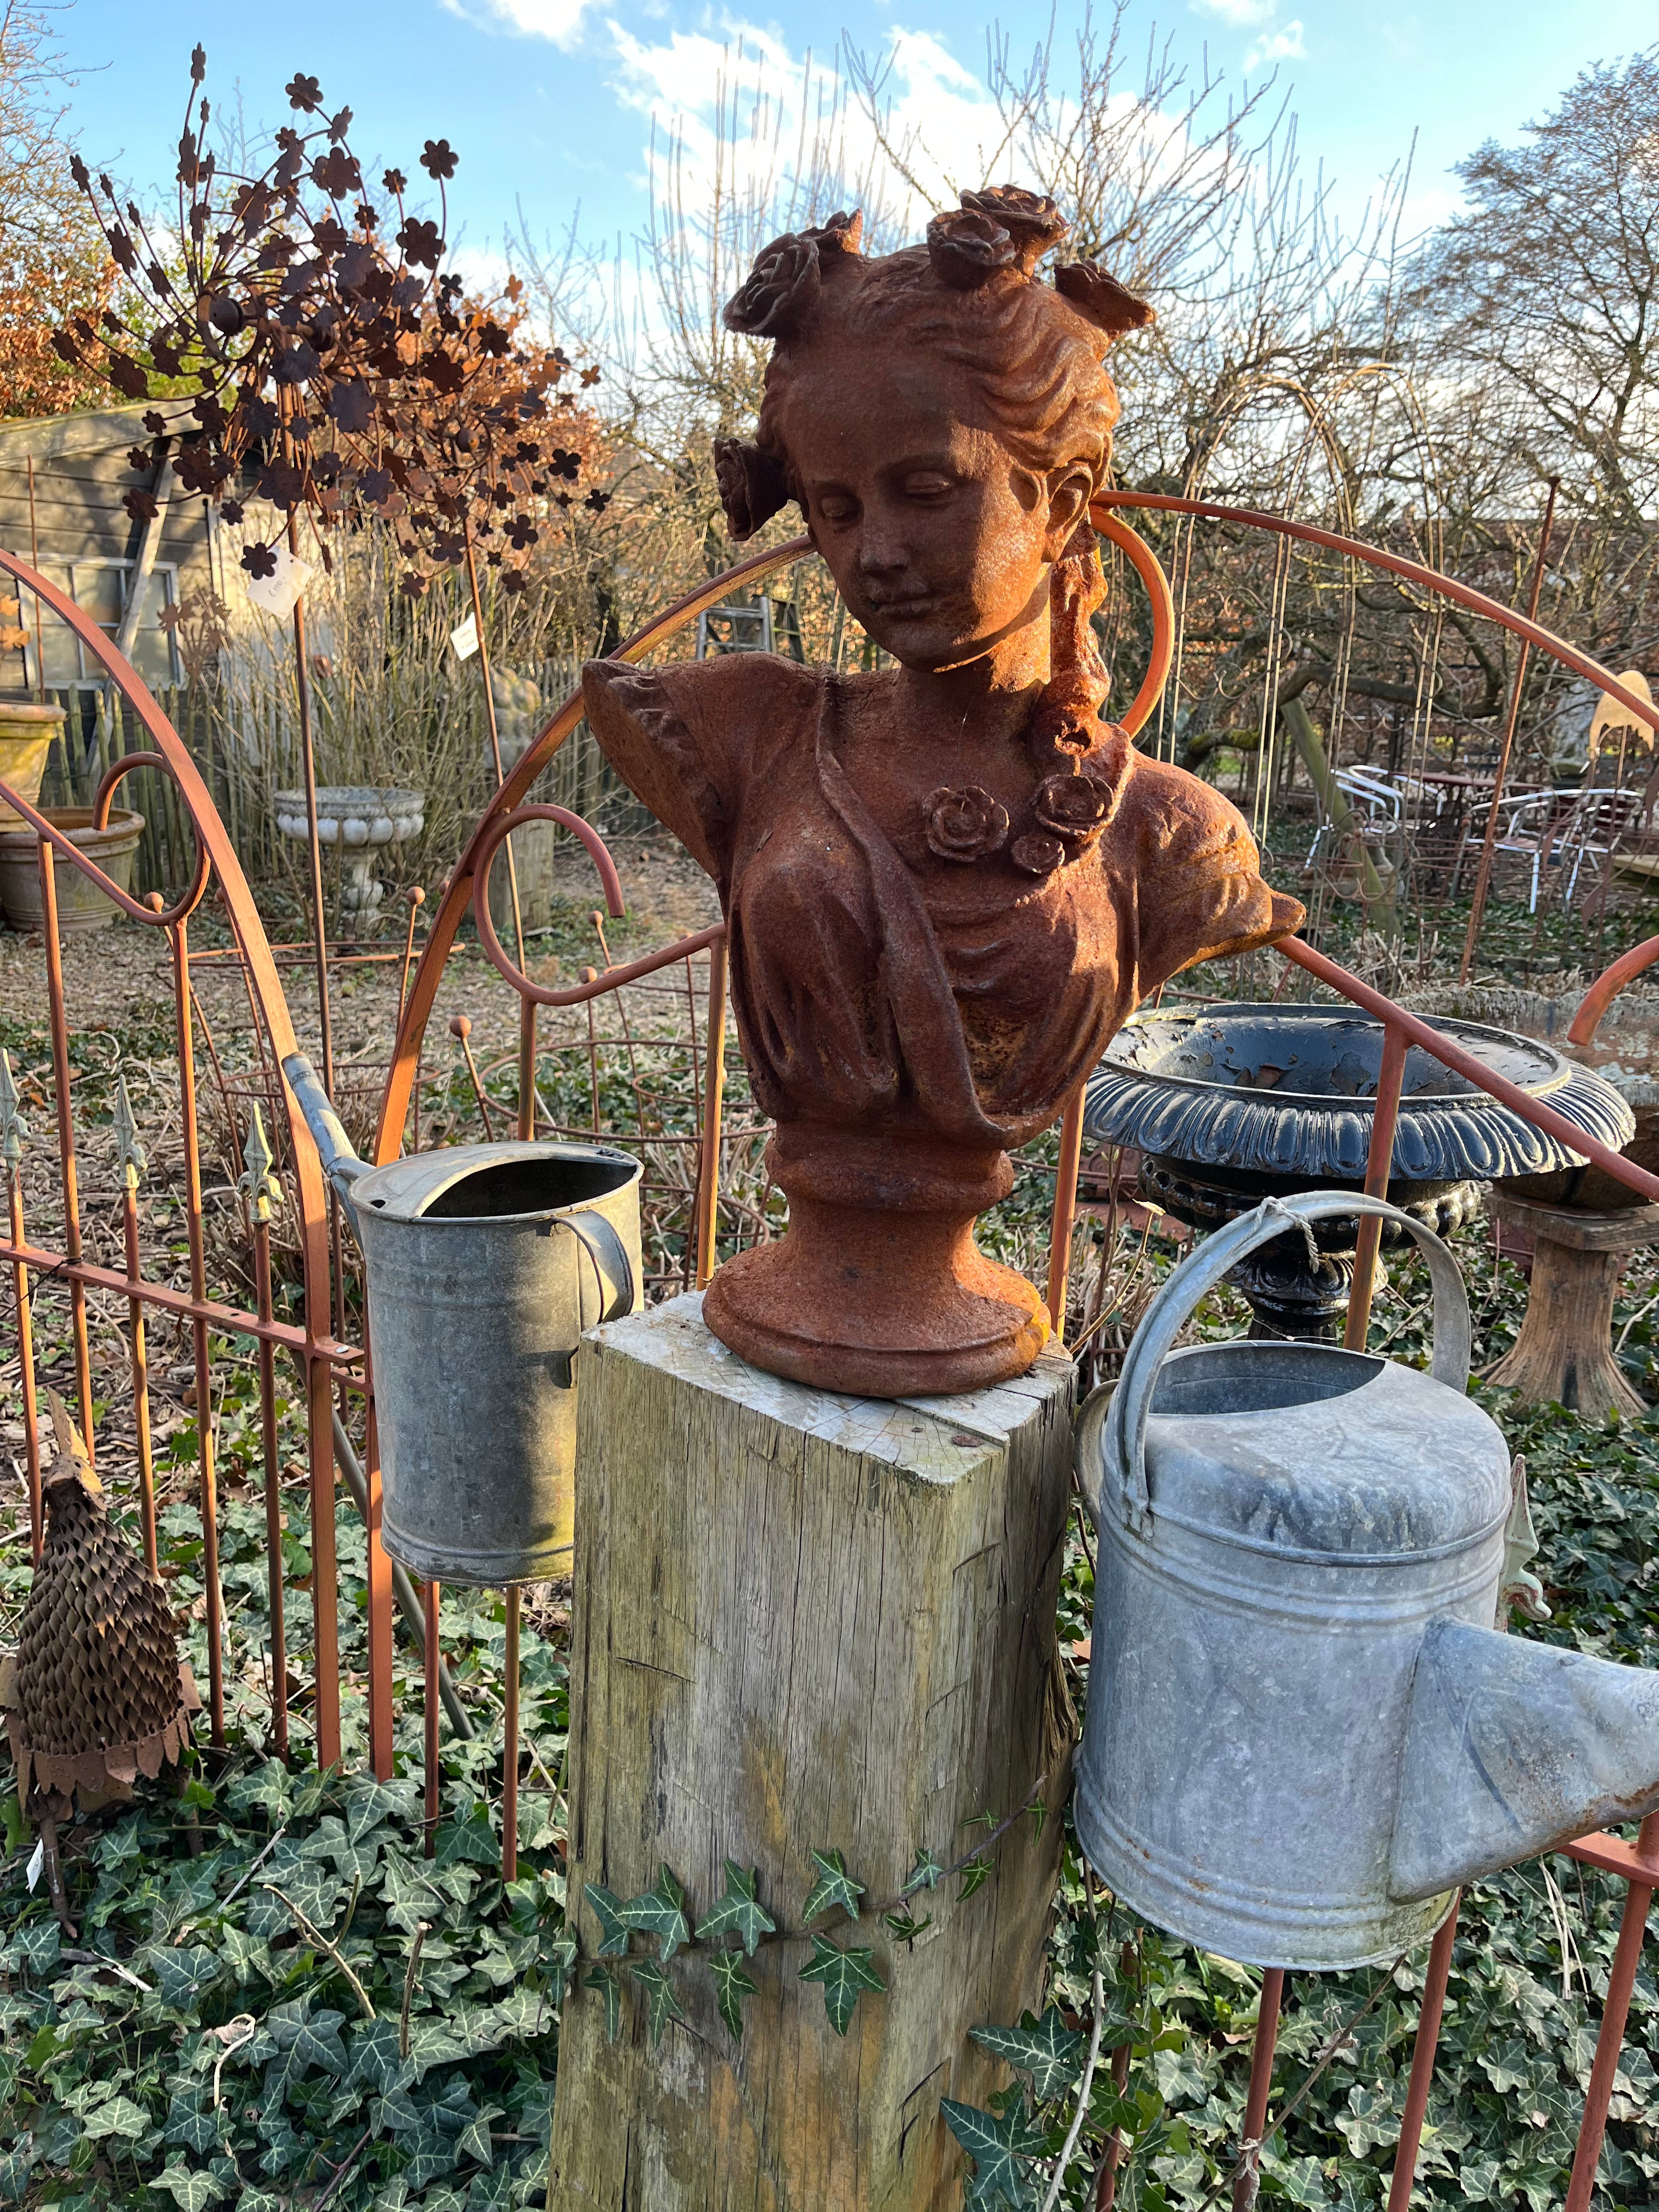 Gietijzeren buste van dame met rozen in het haar - Brocante bij Ingie